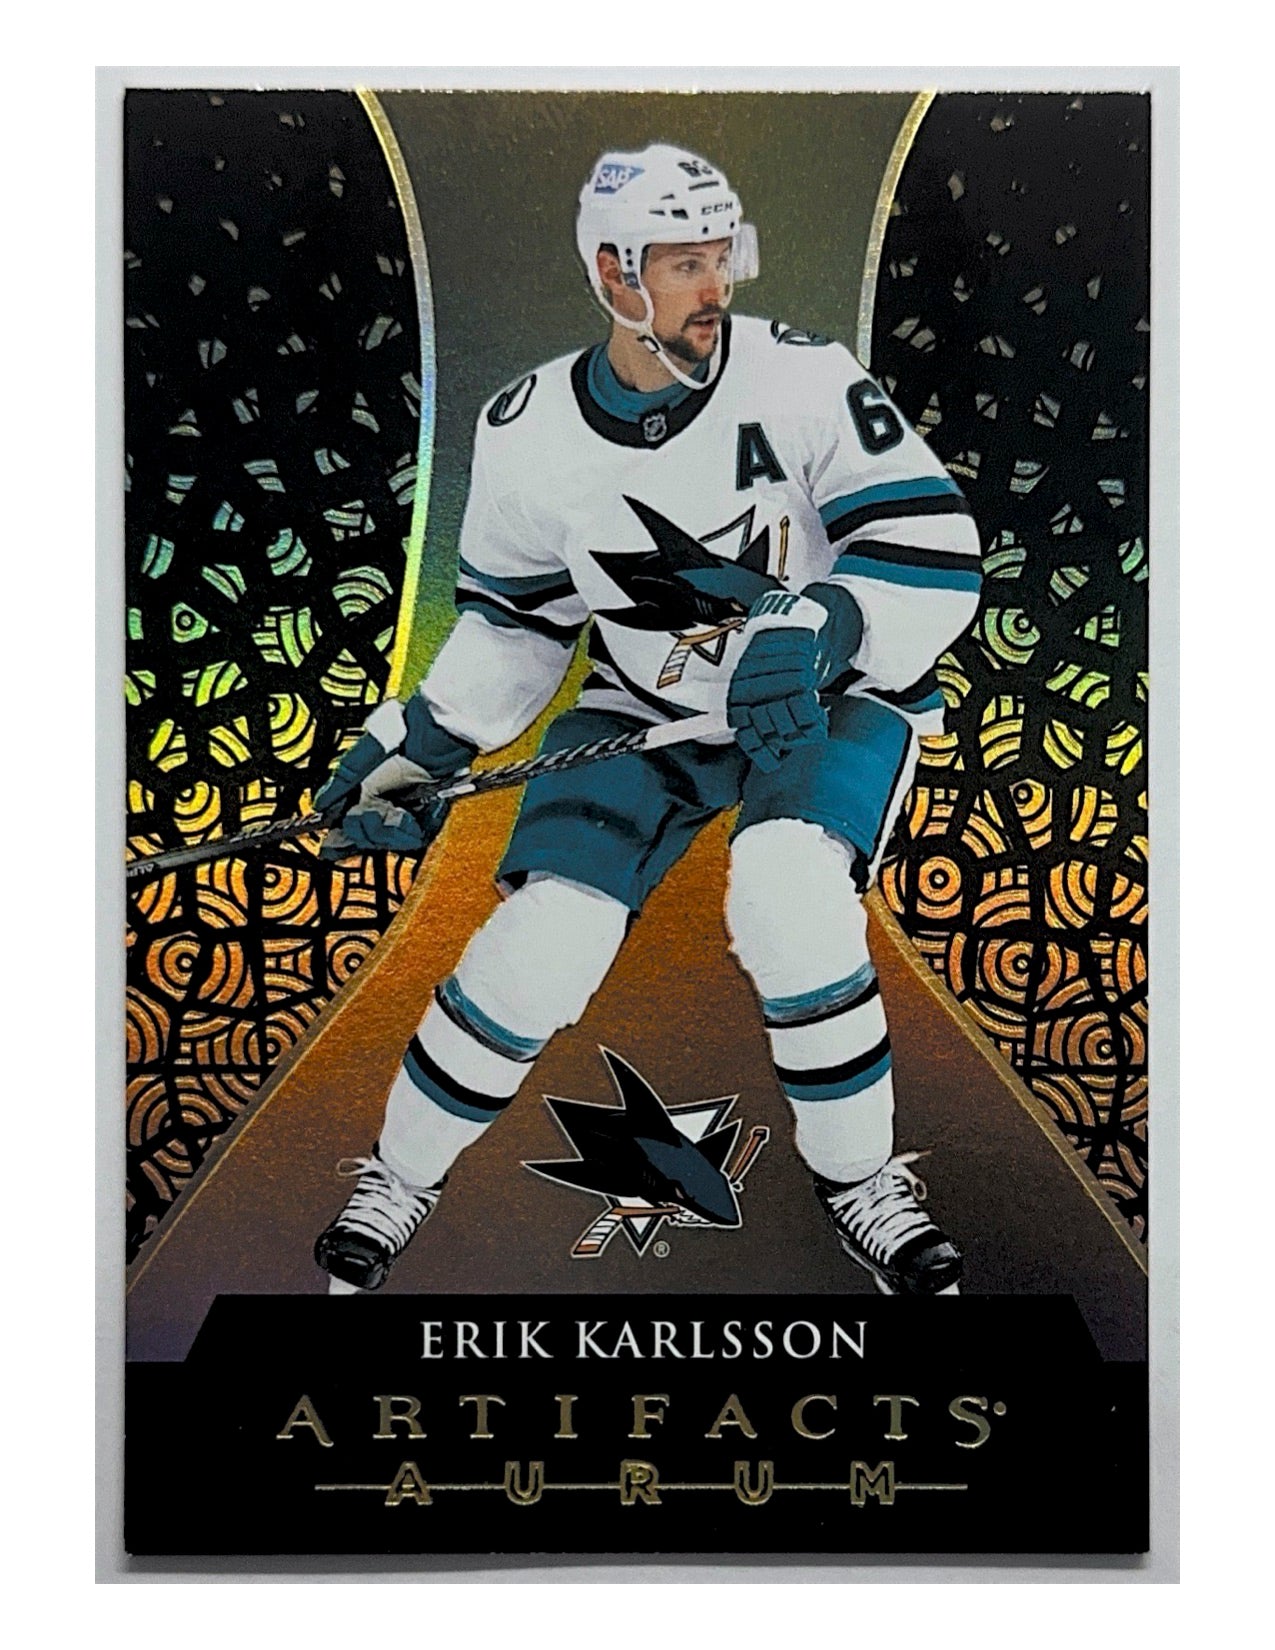 Erik Karlsson 2023-24 Upper Deck Artifacts Aurum #A-14